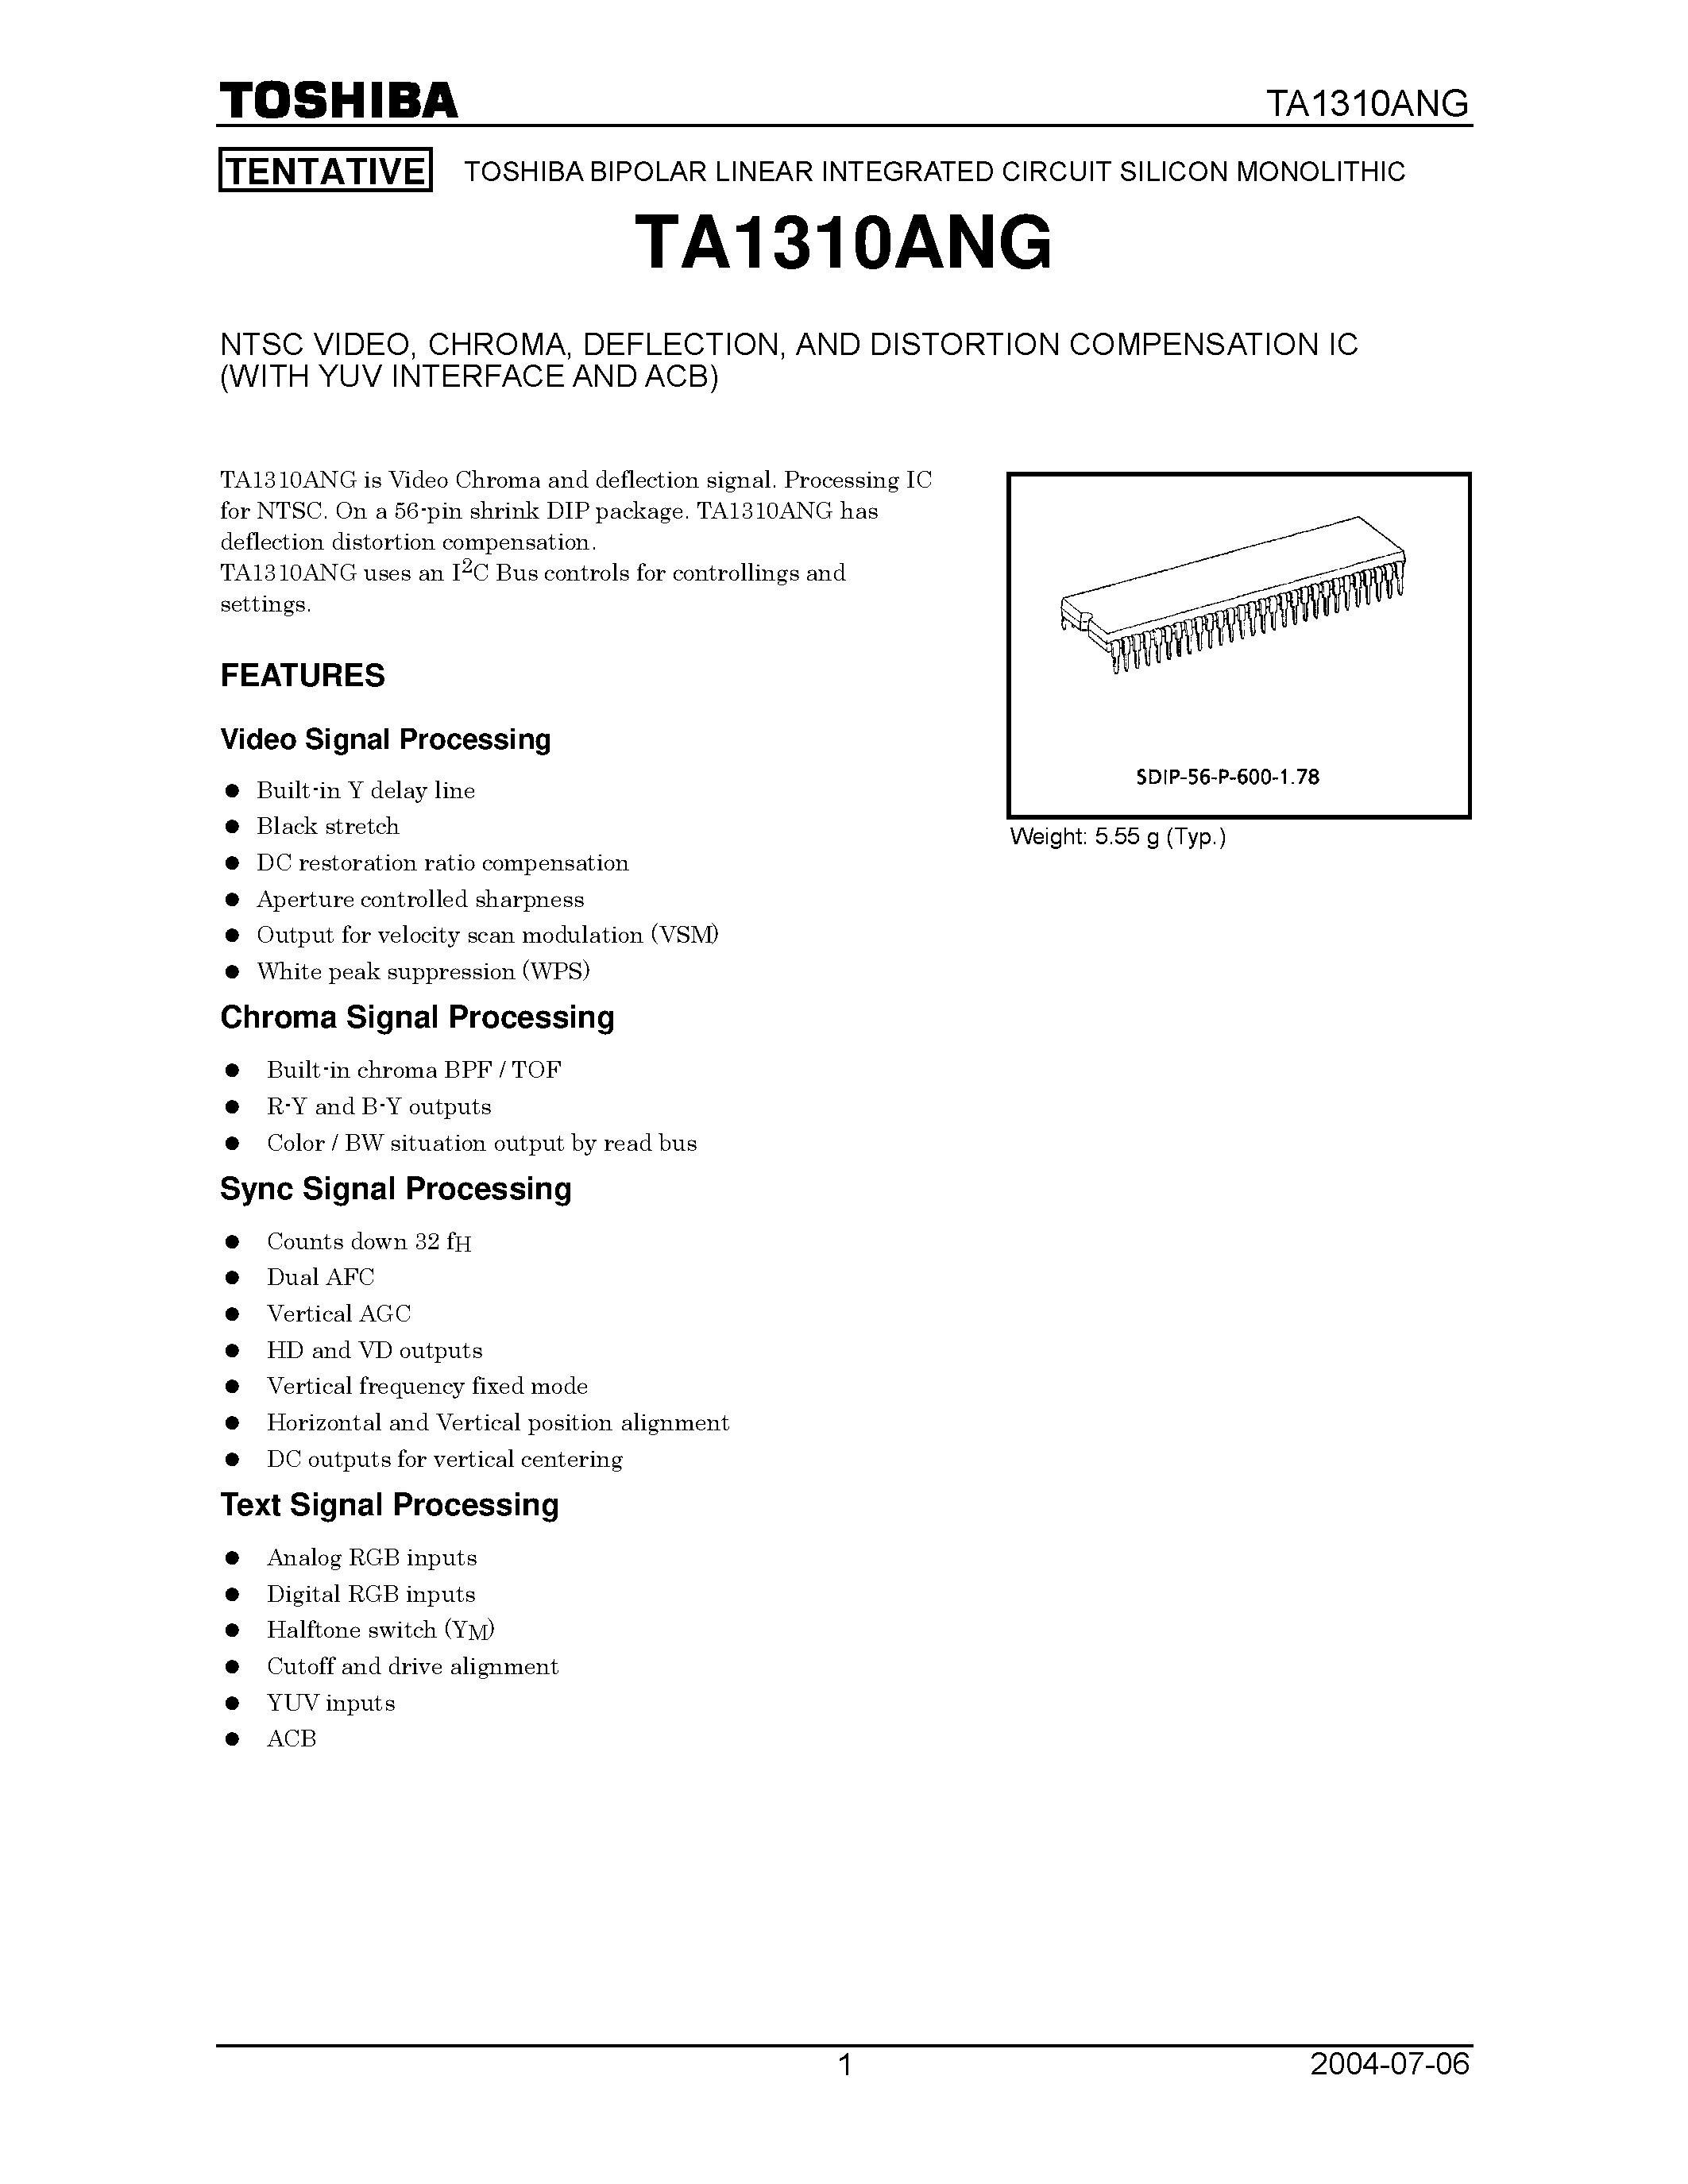 Даташит TA1310ANG - NTSC Video / Chroma / Deflection and Distorition Compensation IC страница 1